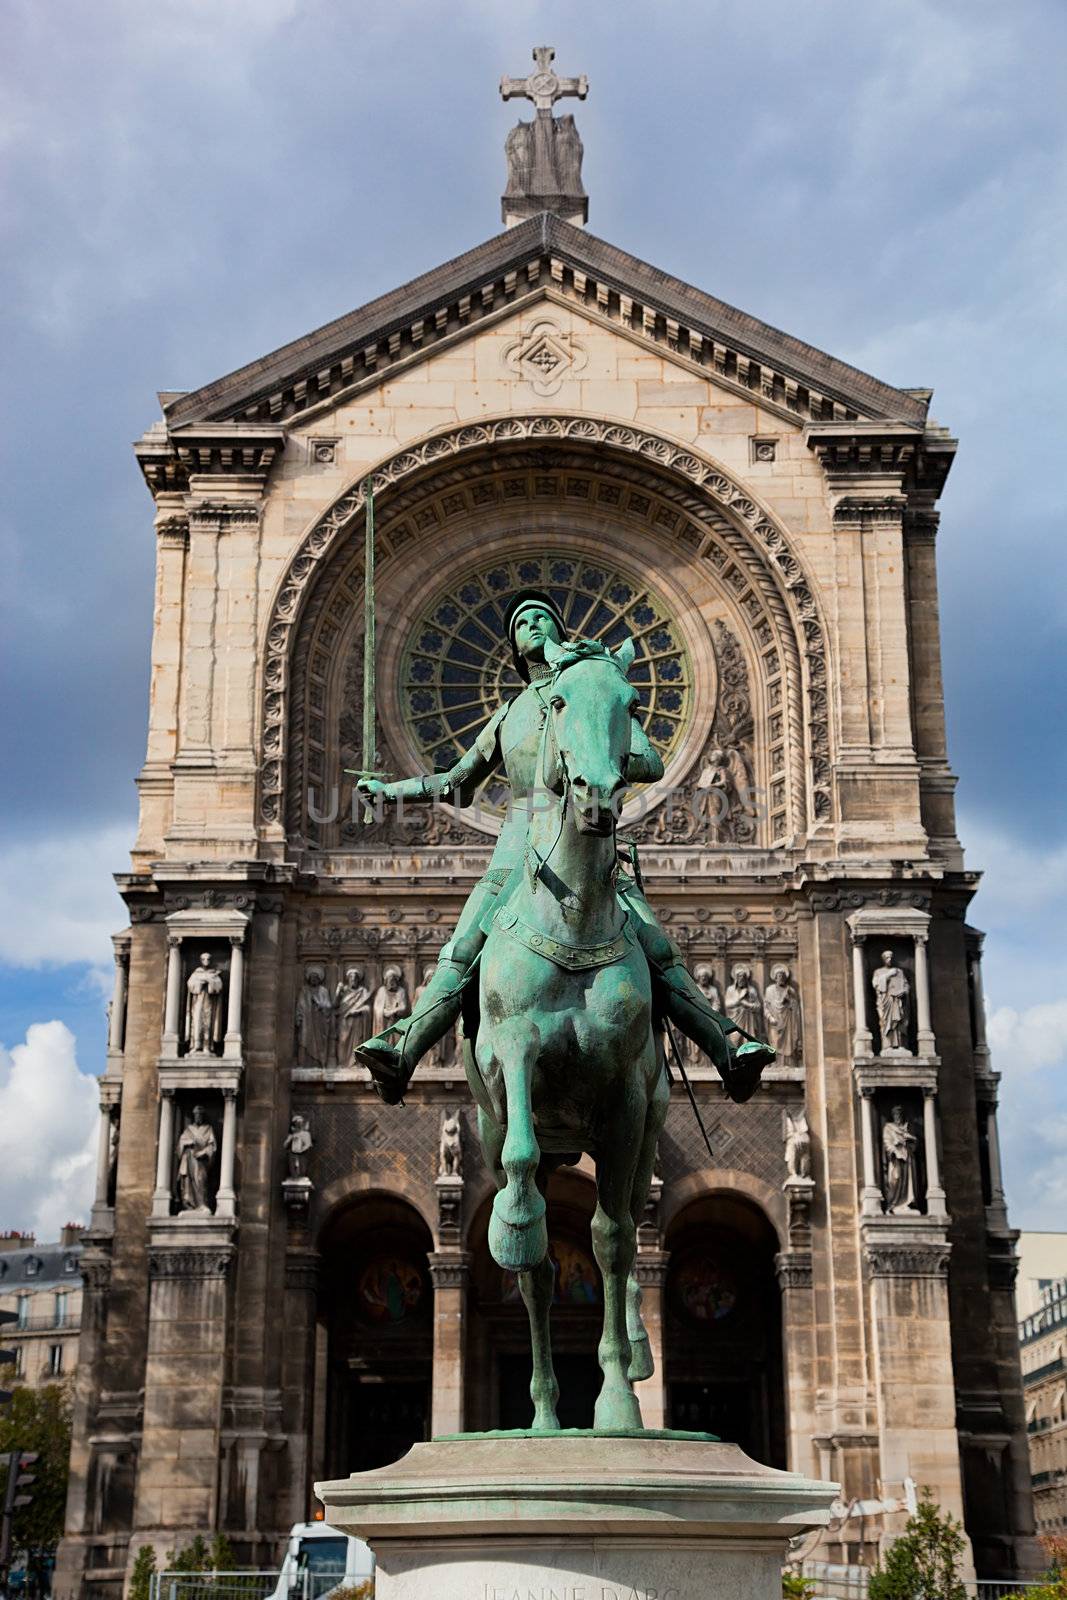 Jeanne d'Arc statue, Paris France by photocreo